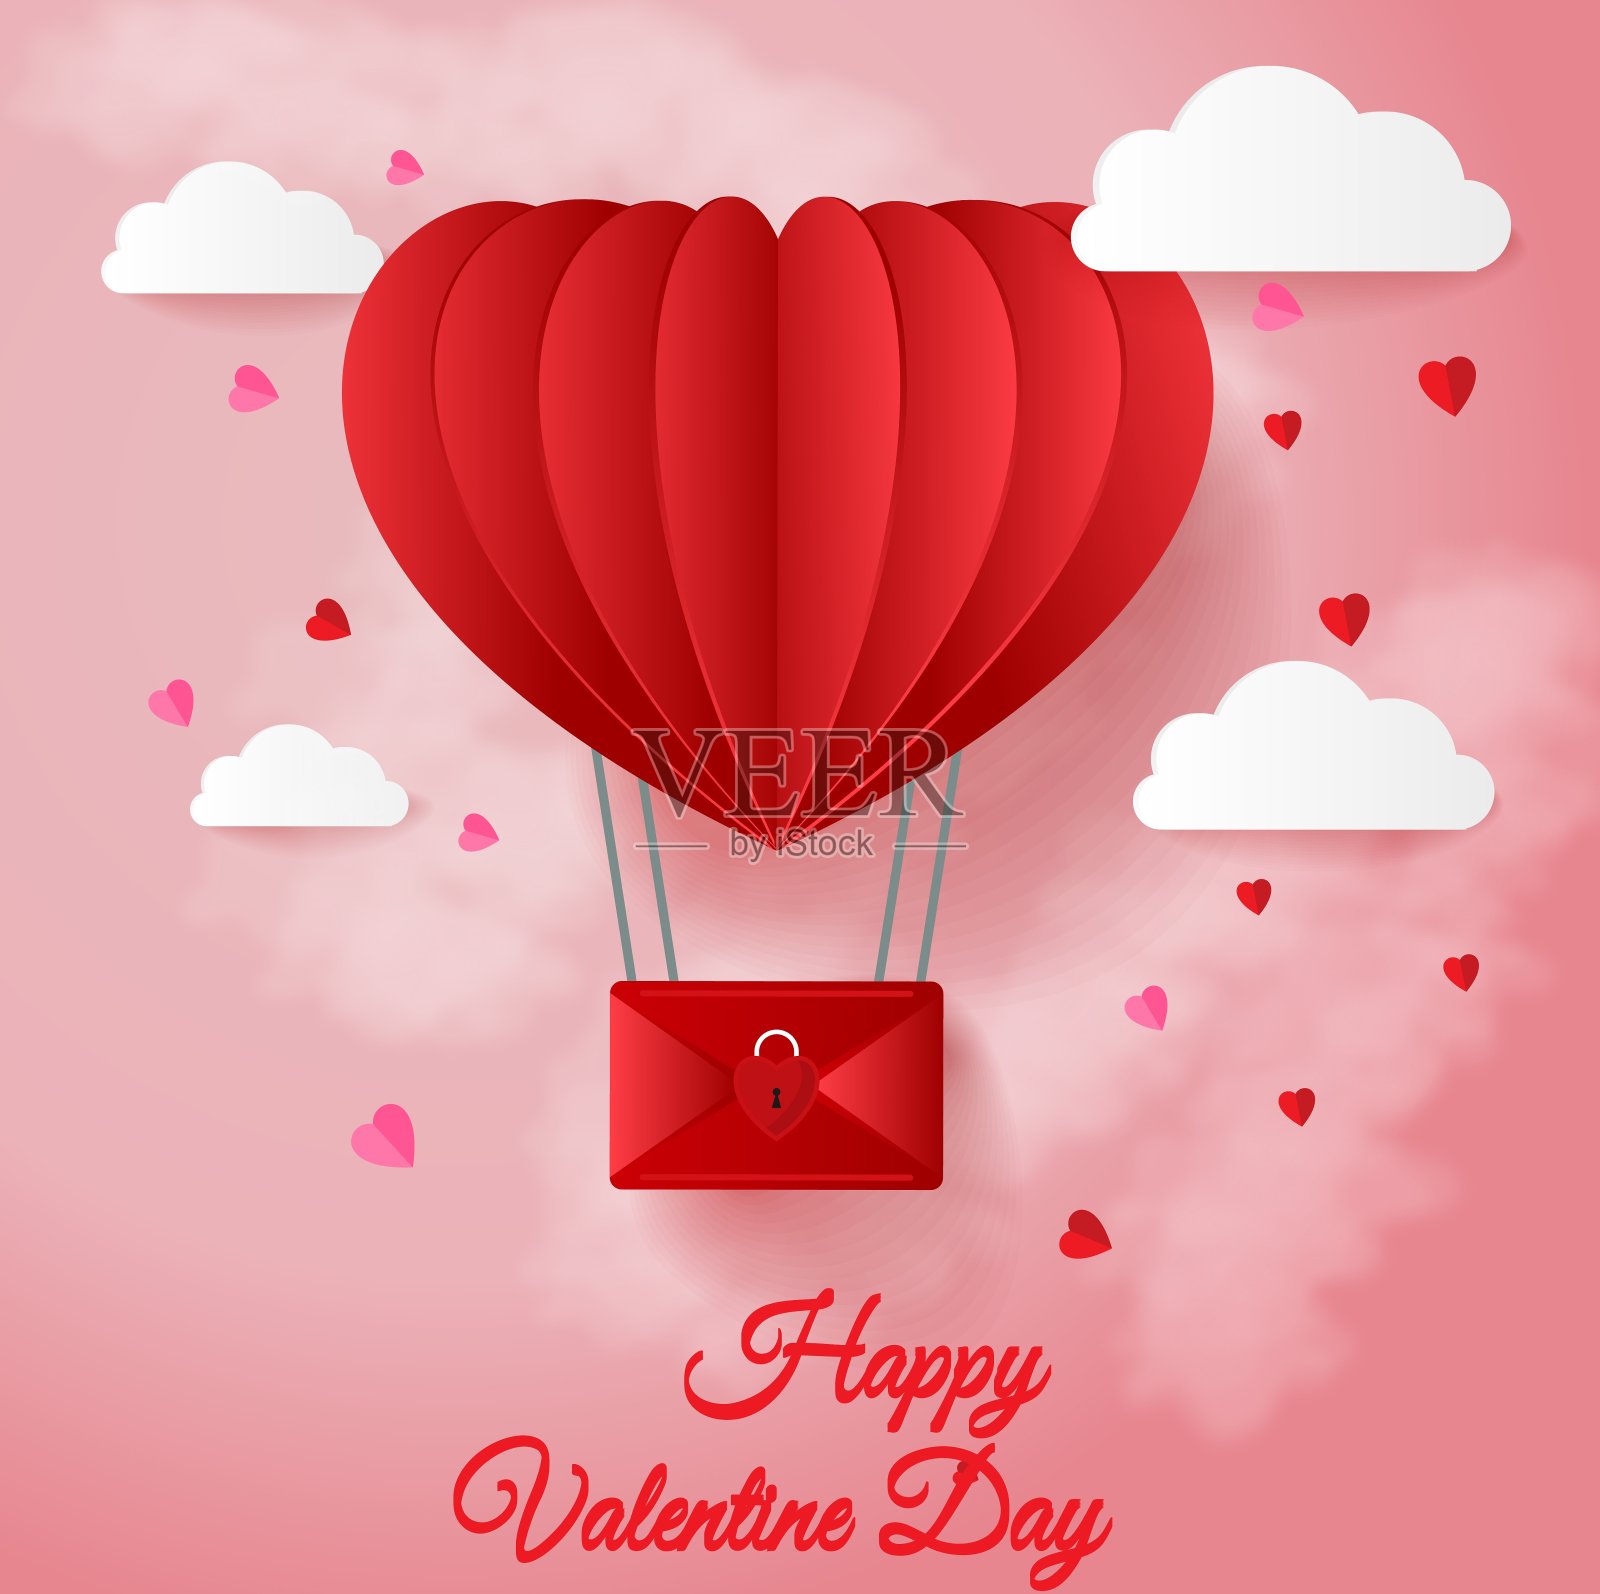 情人节贺卡与红色的心形气球飞行和心形在白色的背景设计模板素材